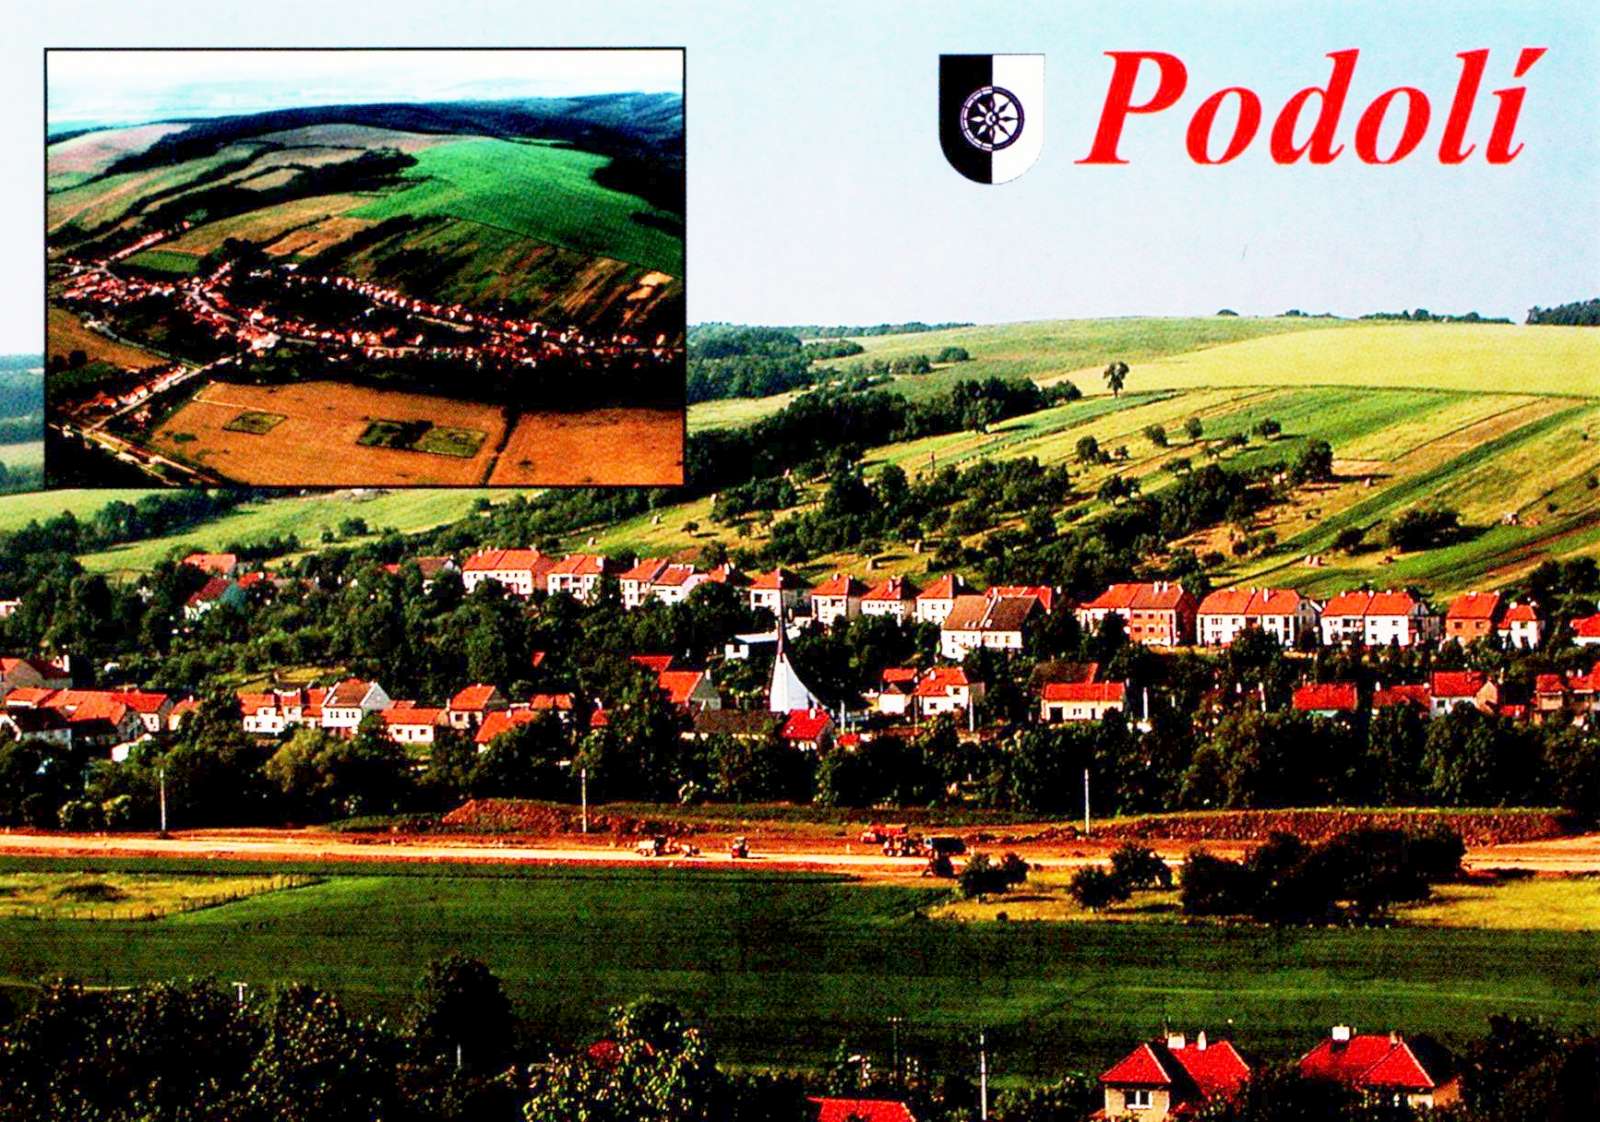 Panoramatická pohlednice Podolí z roku 2002